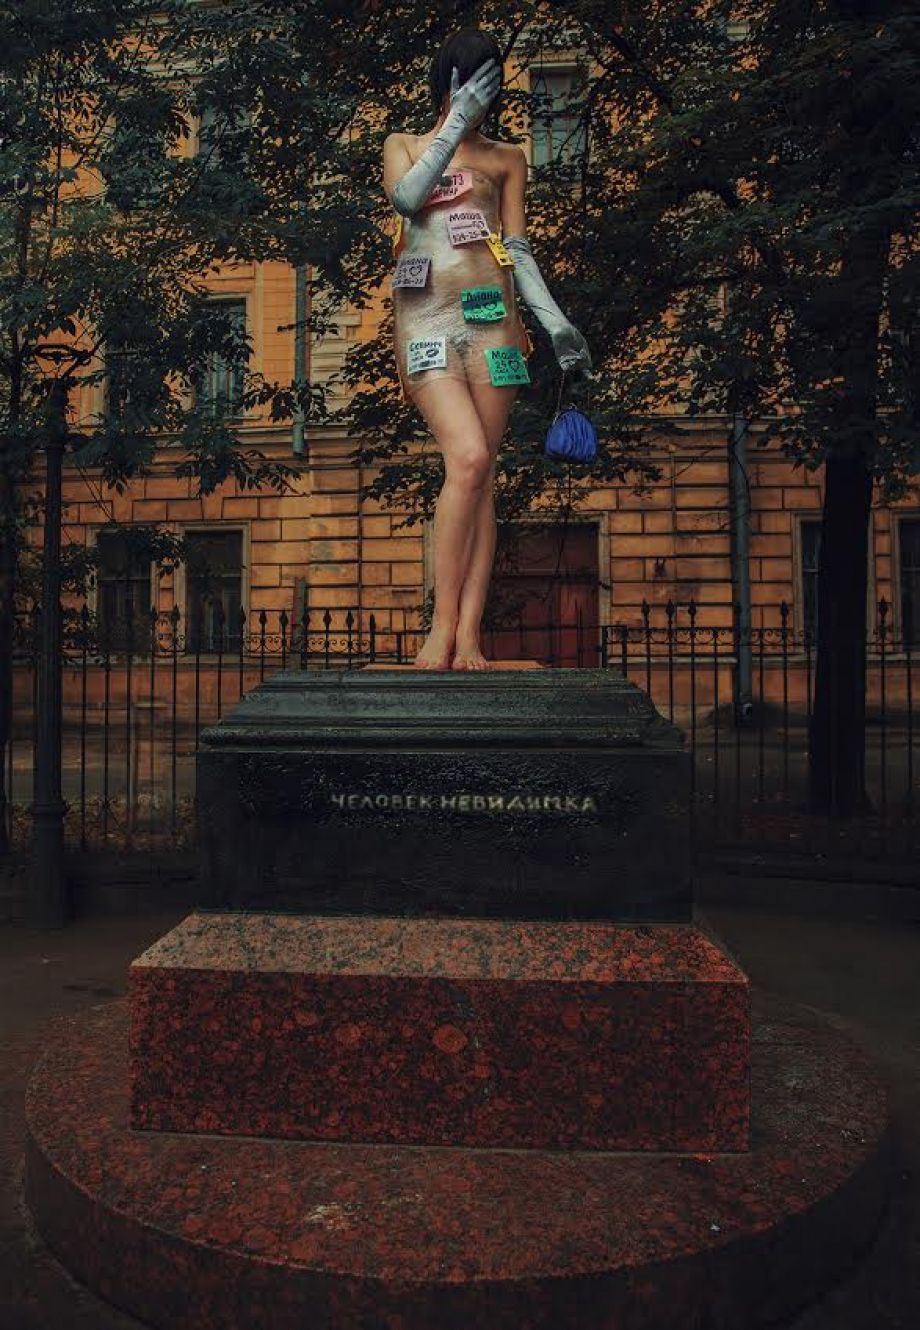 «Любовь 24 часа»: Петербург «прославился» рекламой интим-услуг на асфальте